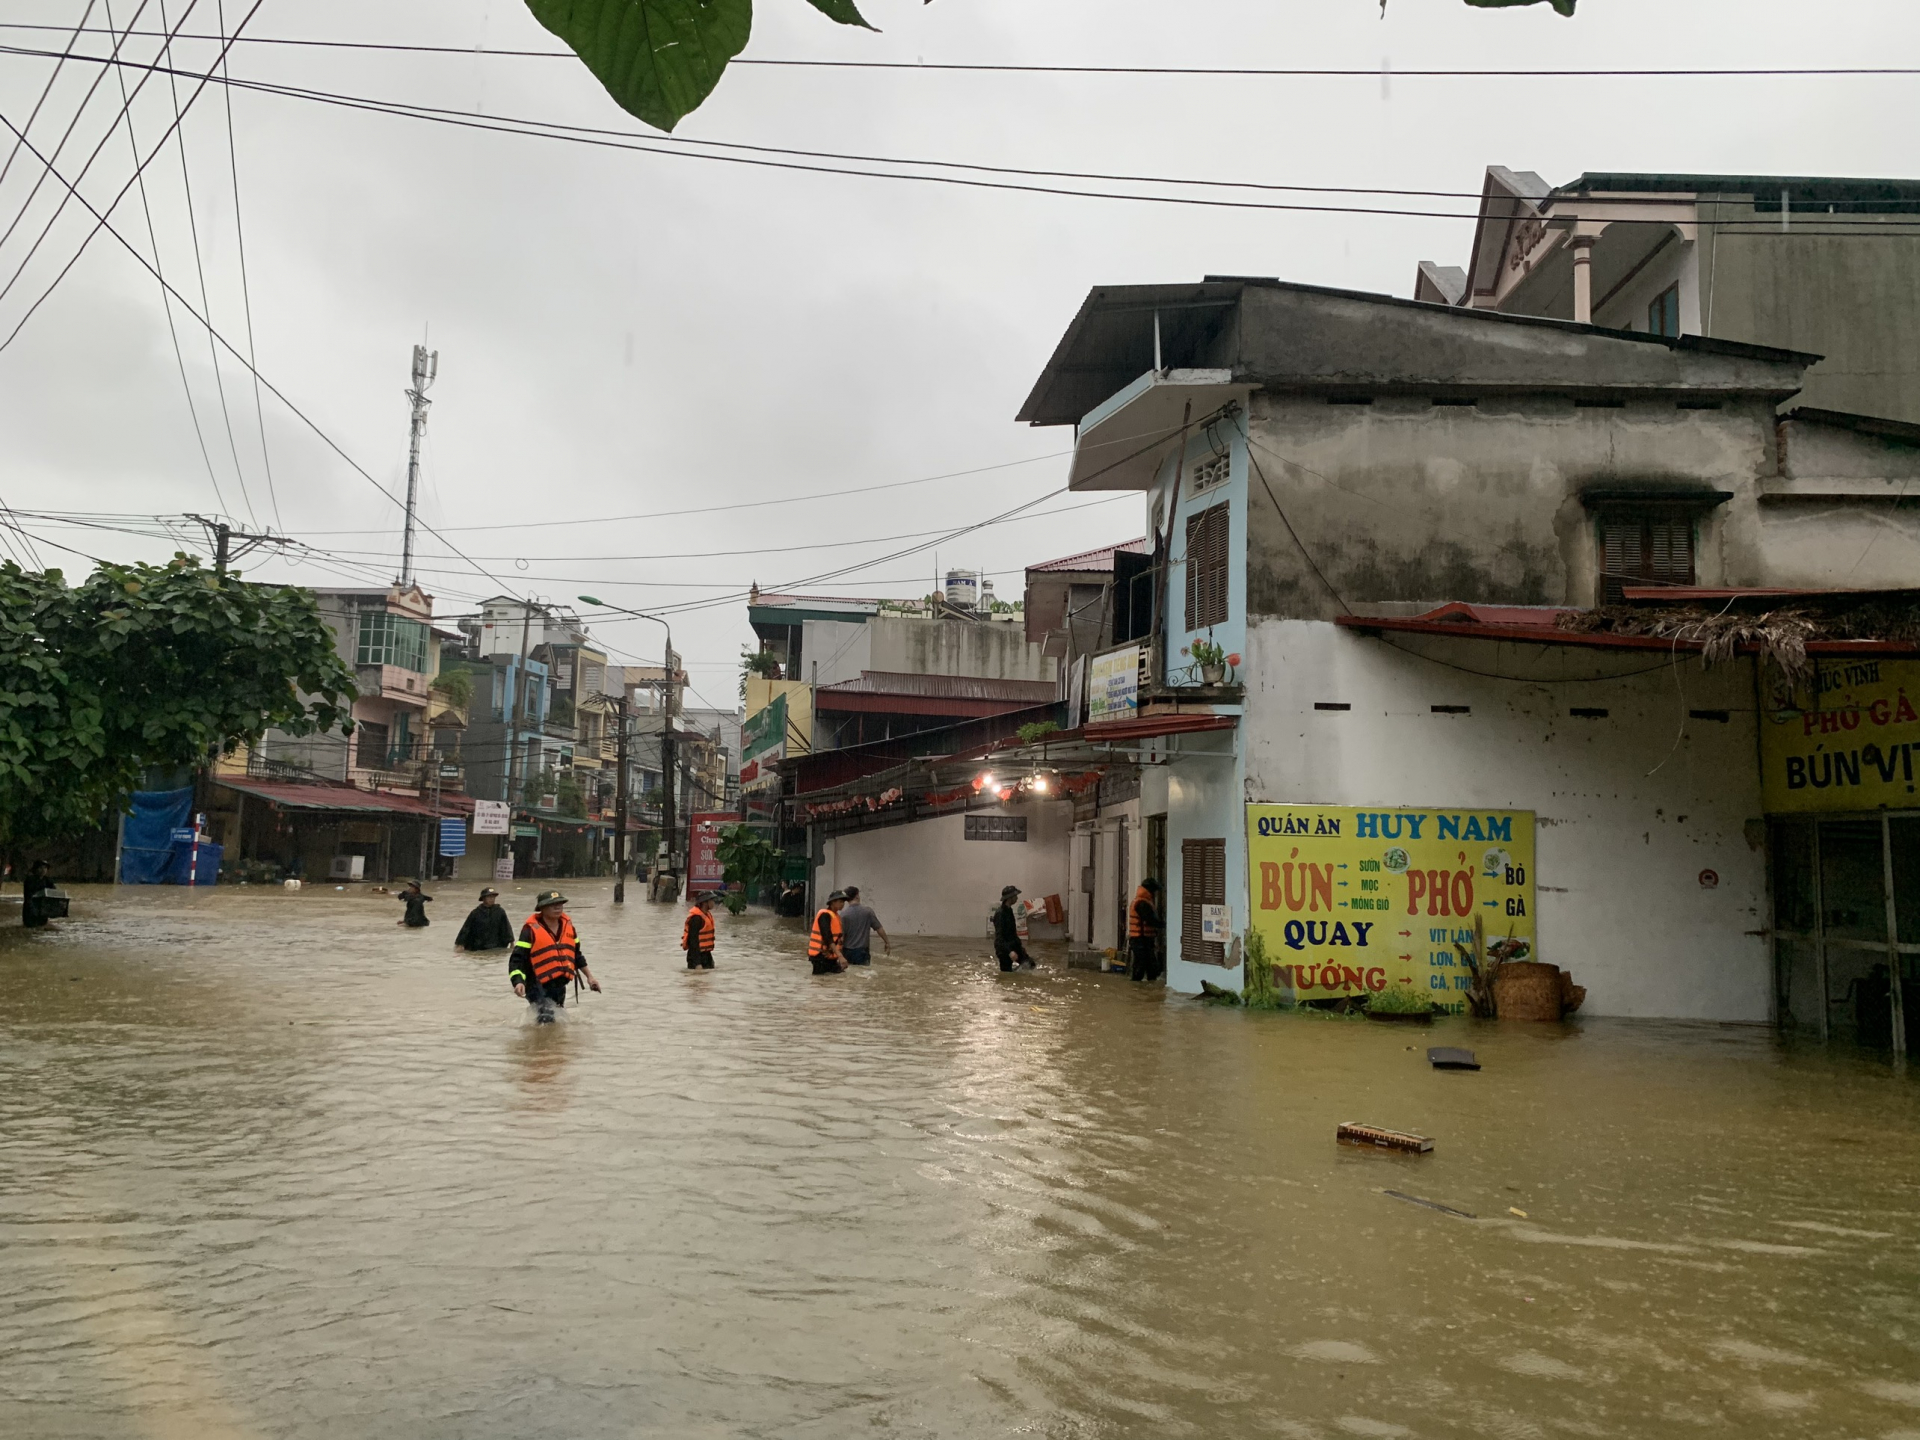 đường Minh Khai, phường Minh khai ngập sâu.
